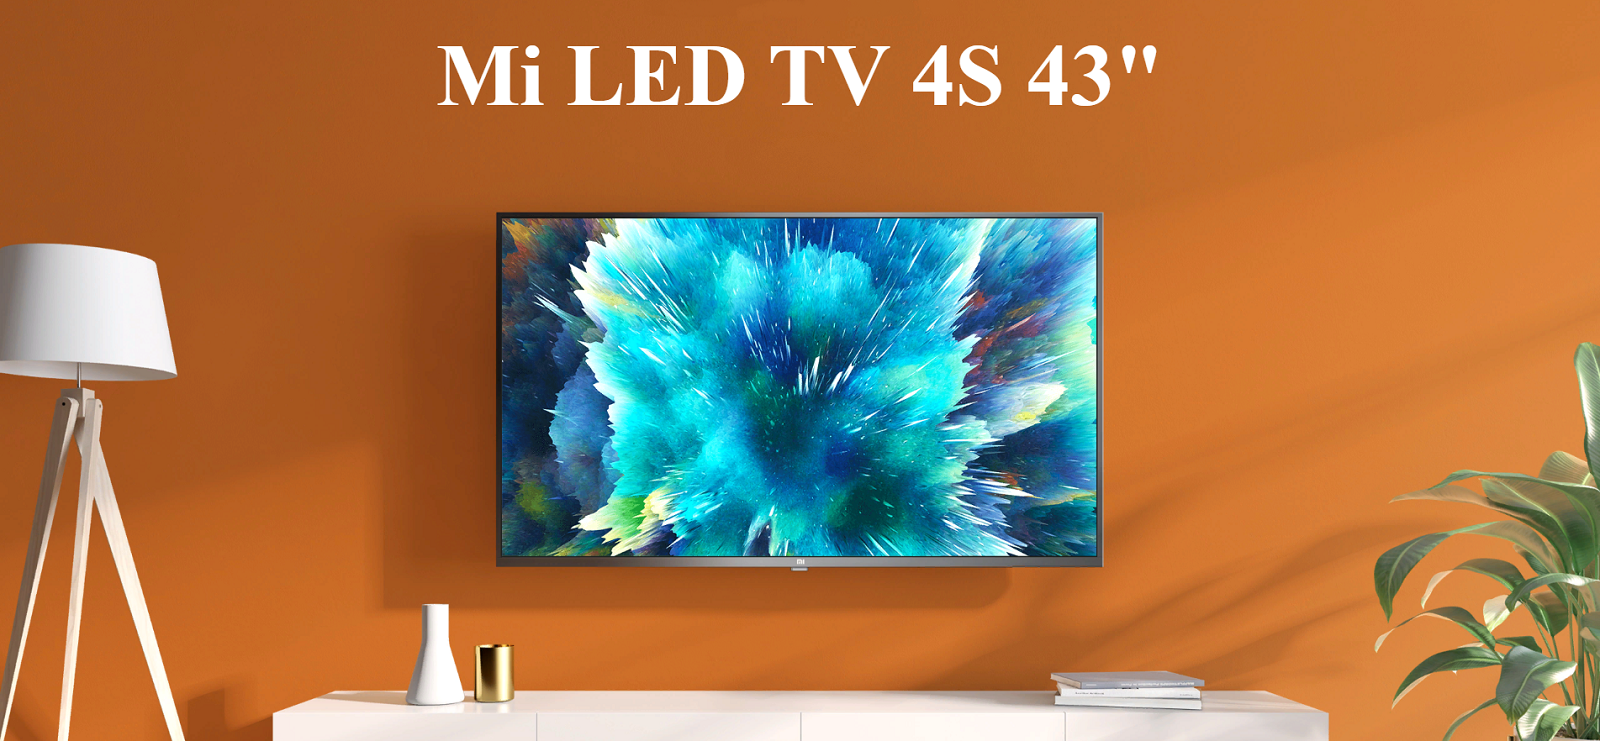 Телевизор Xiaomi Mi LED TV 4S 43″ (L43M5-5ARU)